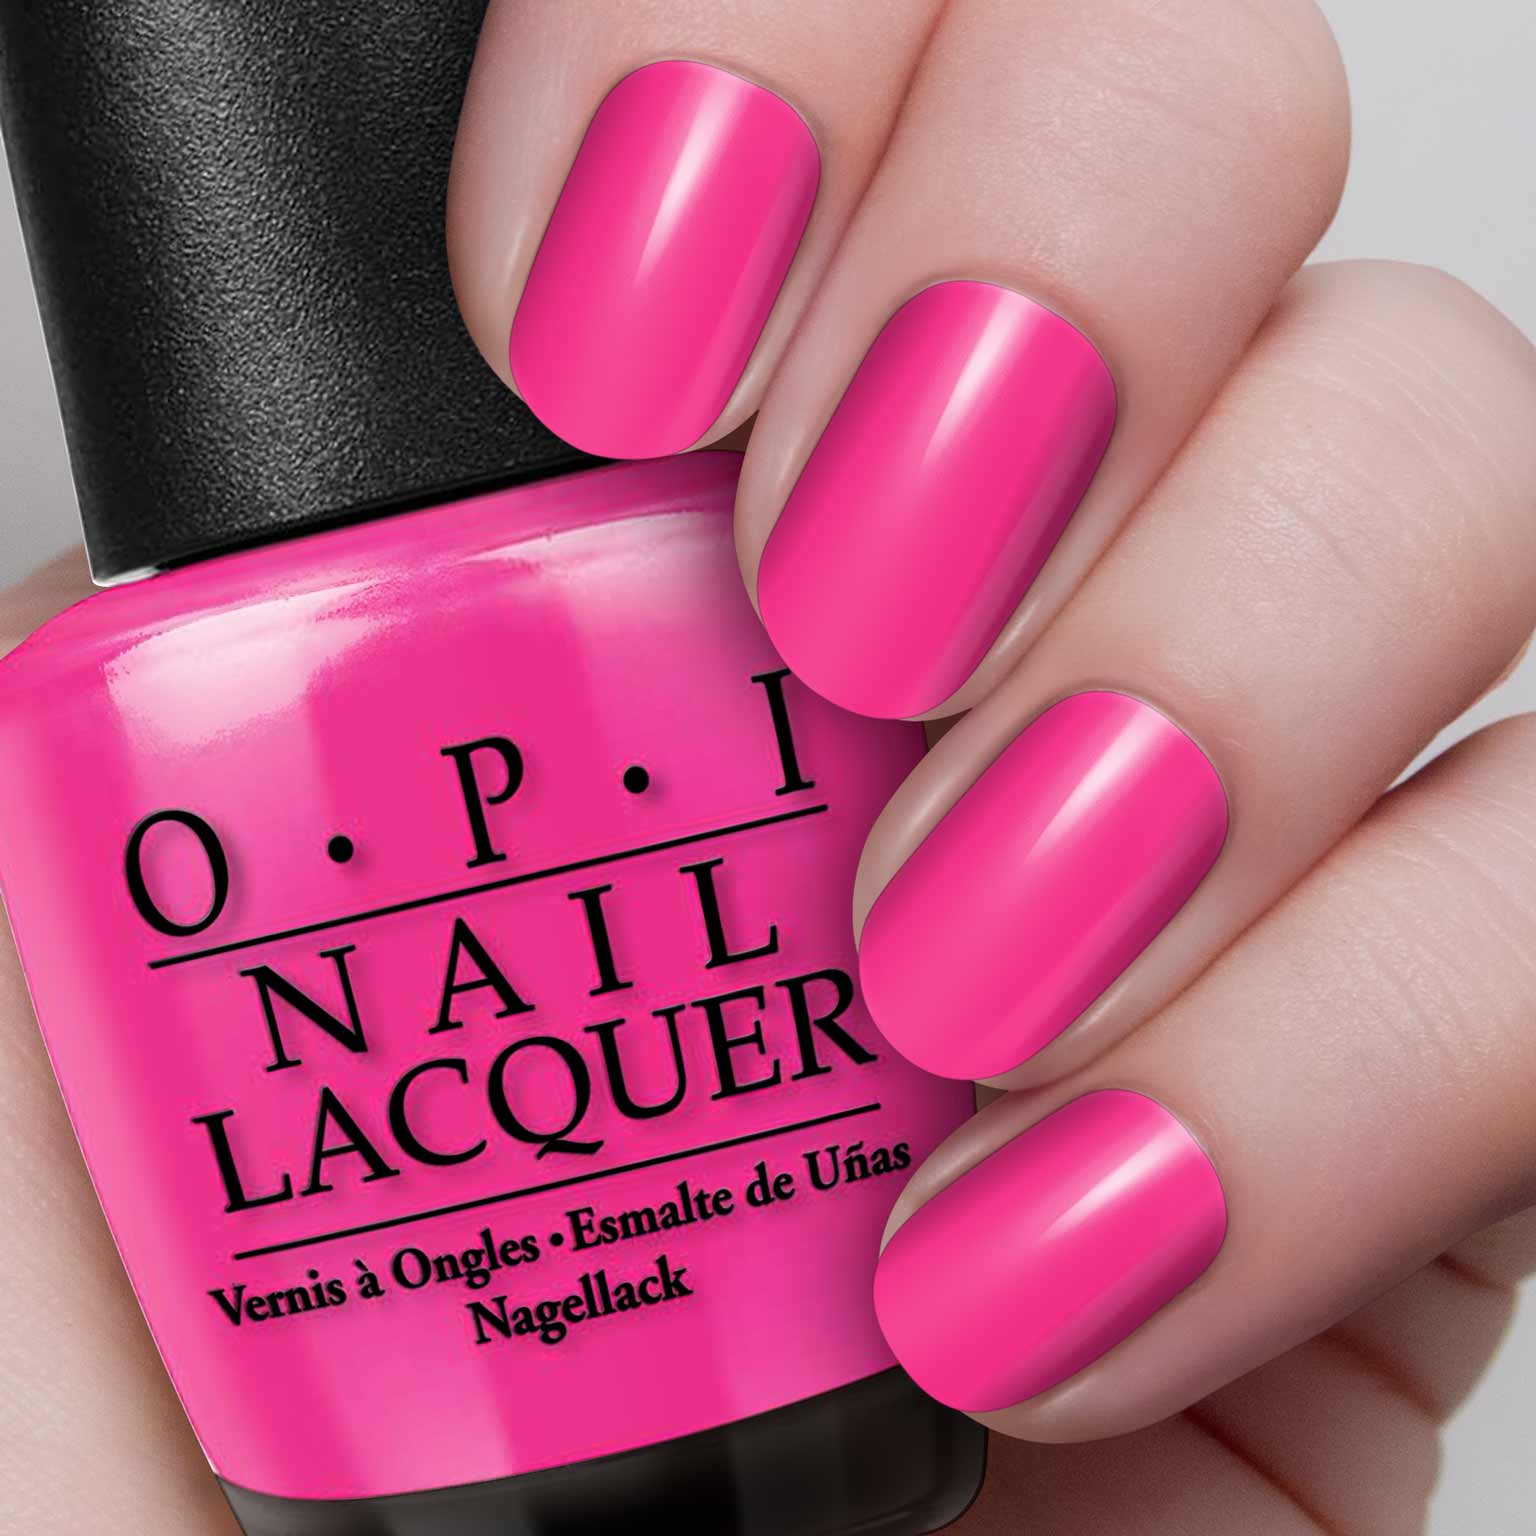 Sơn móng tay OPI NL B36 sở hữu tông màu hồng ngọt ngào, nữ tính